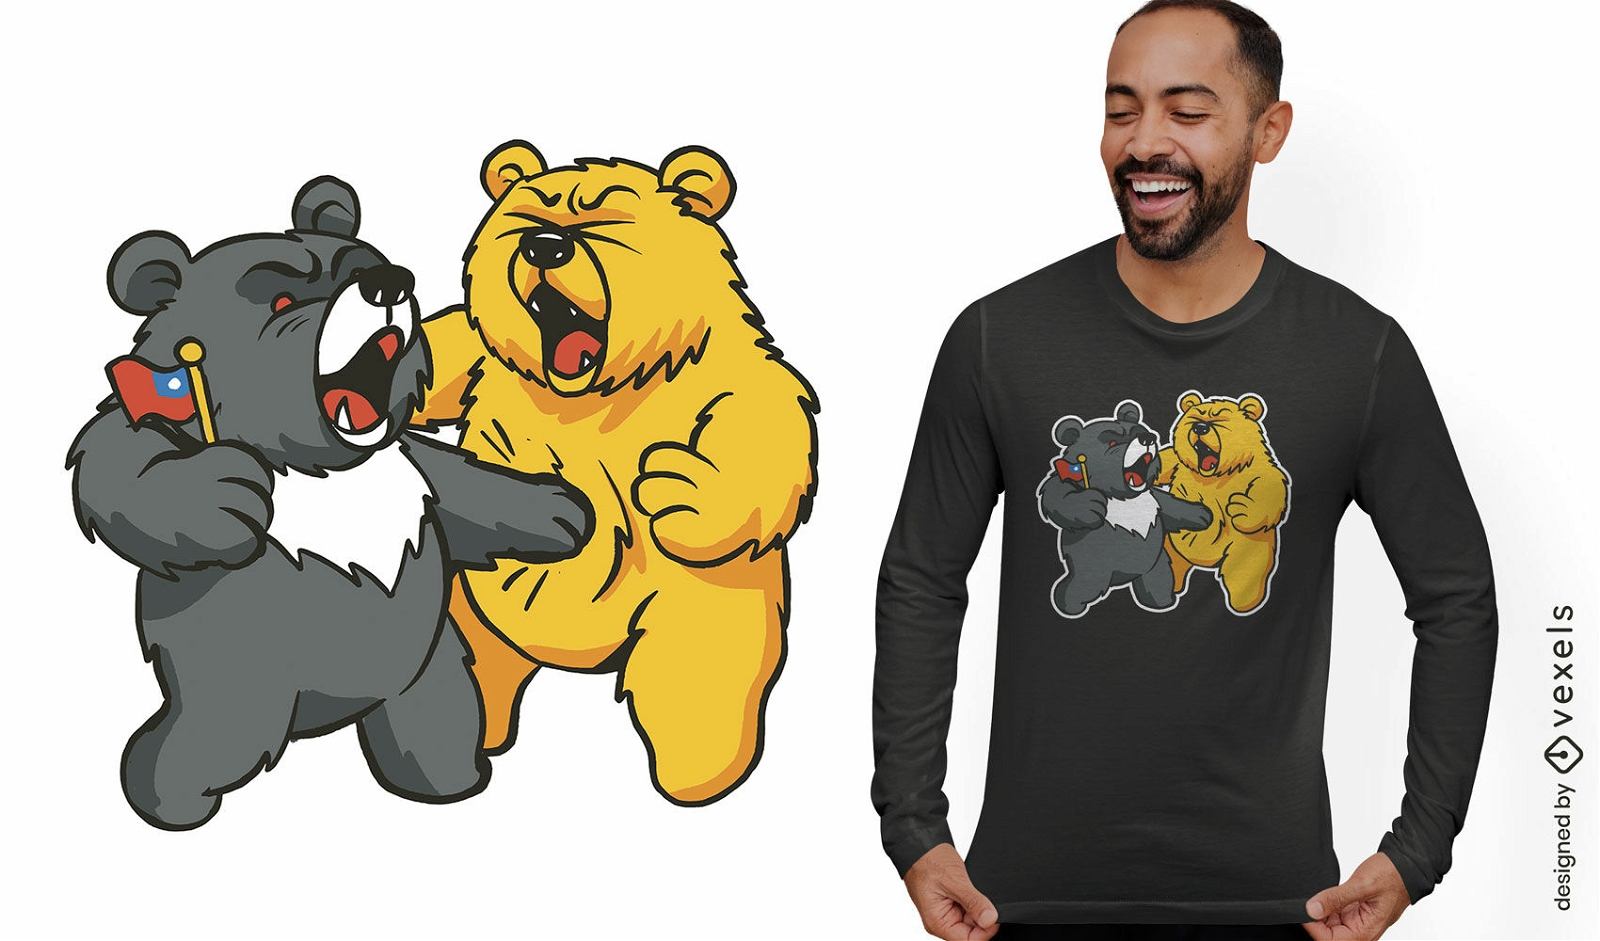 Dise?o de camiseta de humor de oso.